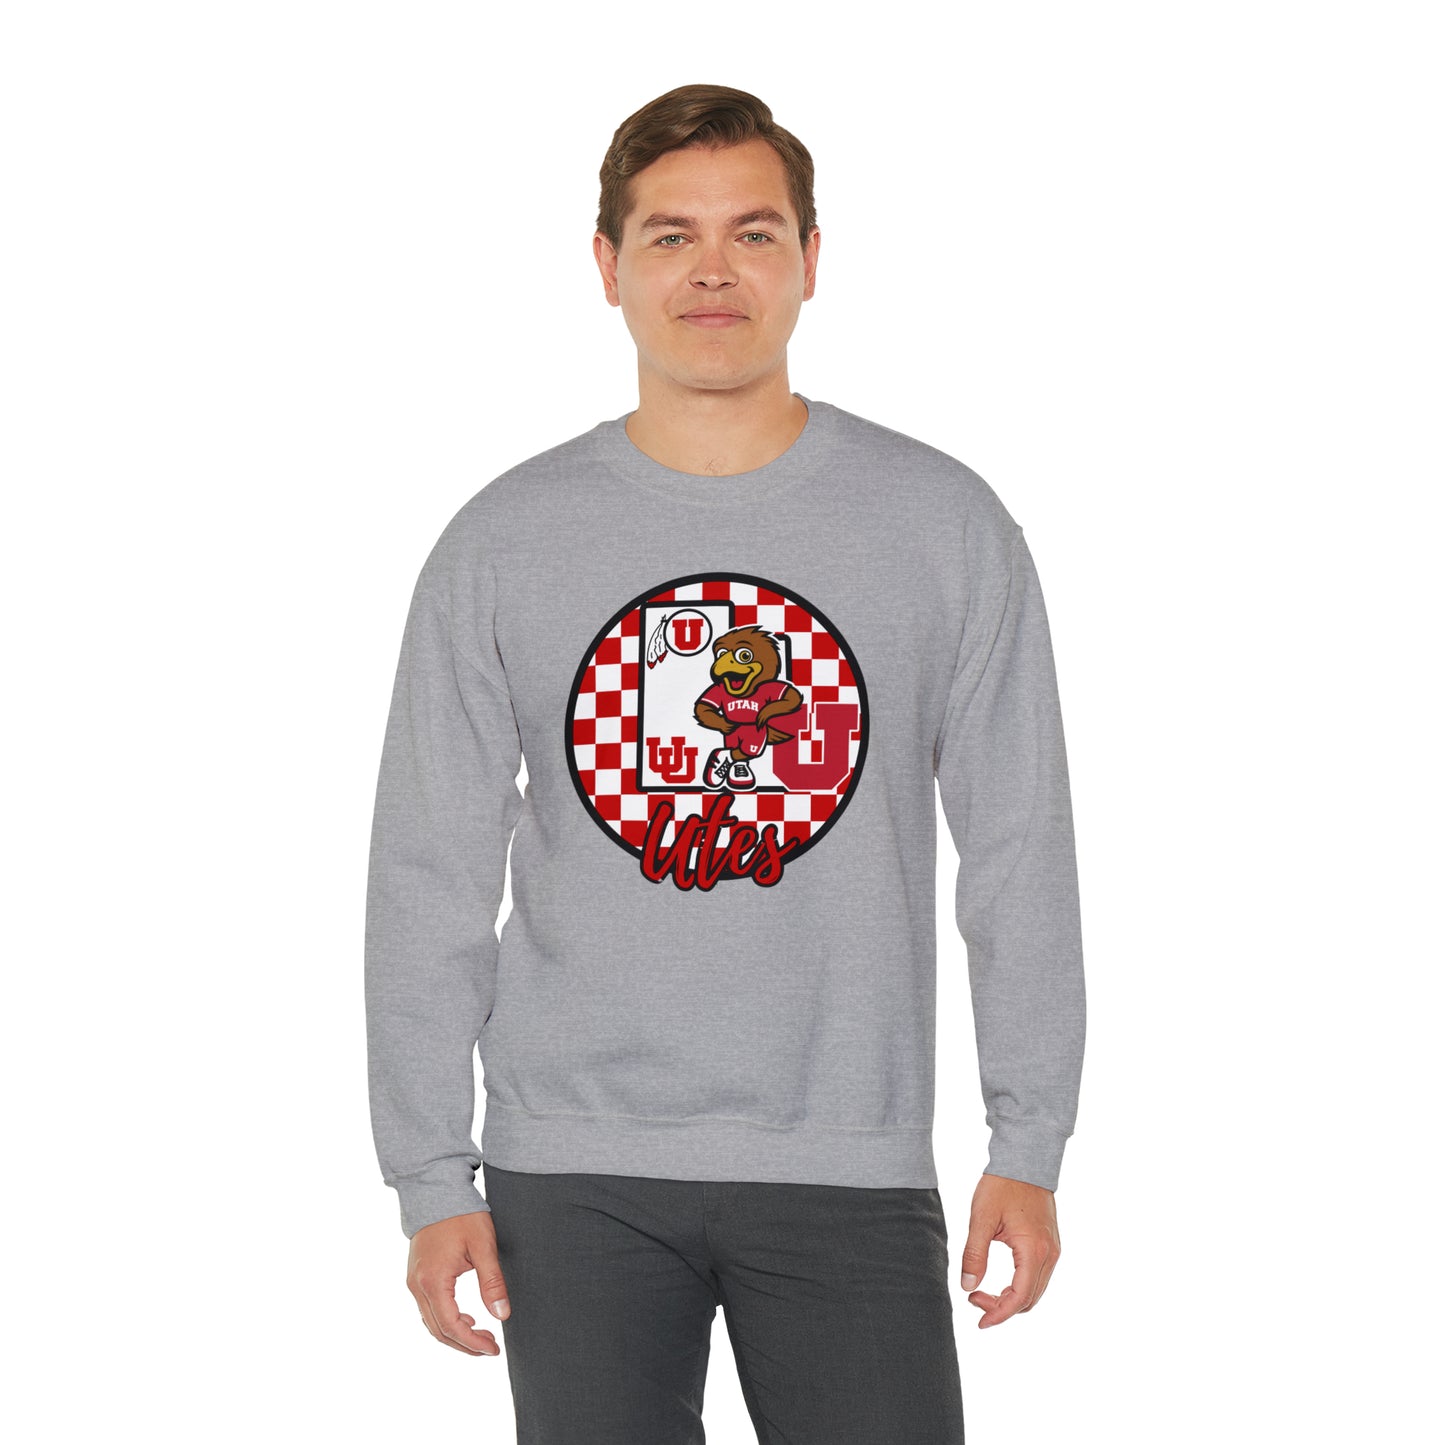 Utah Utes Checkered Sweatshirt